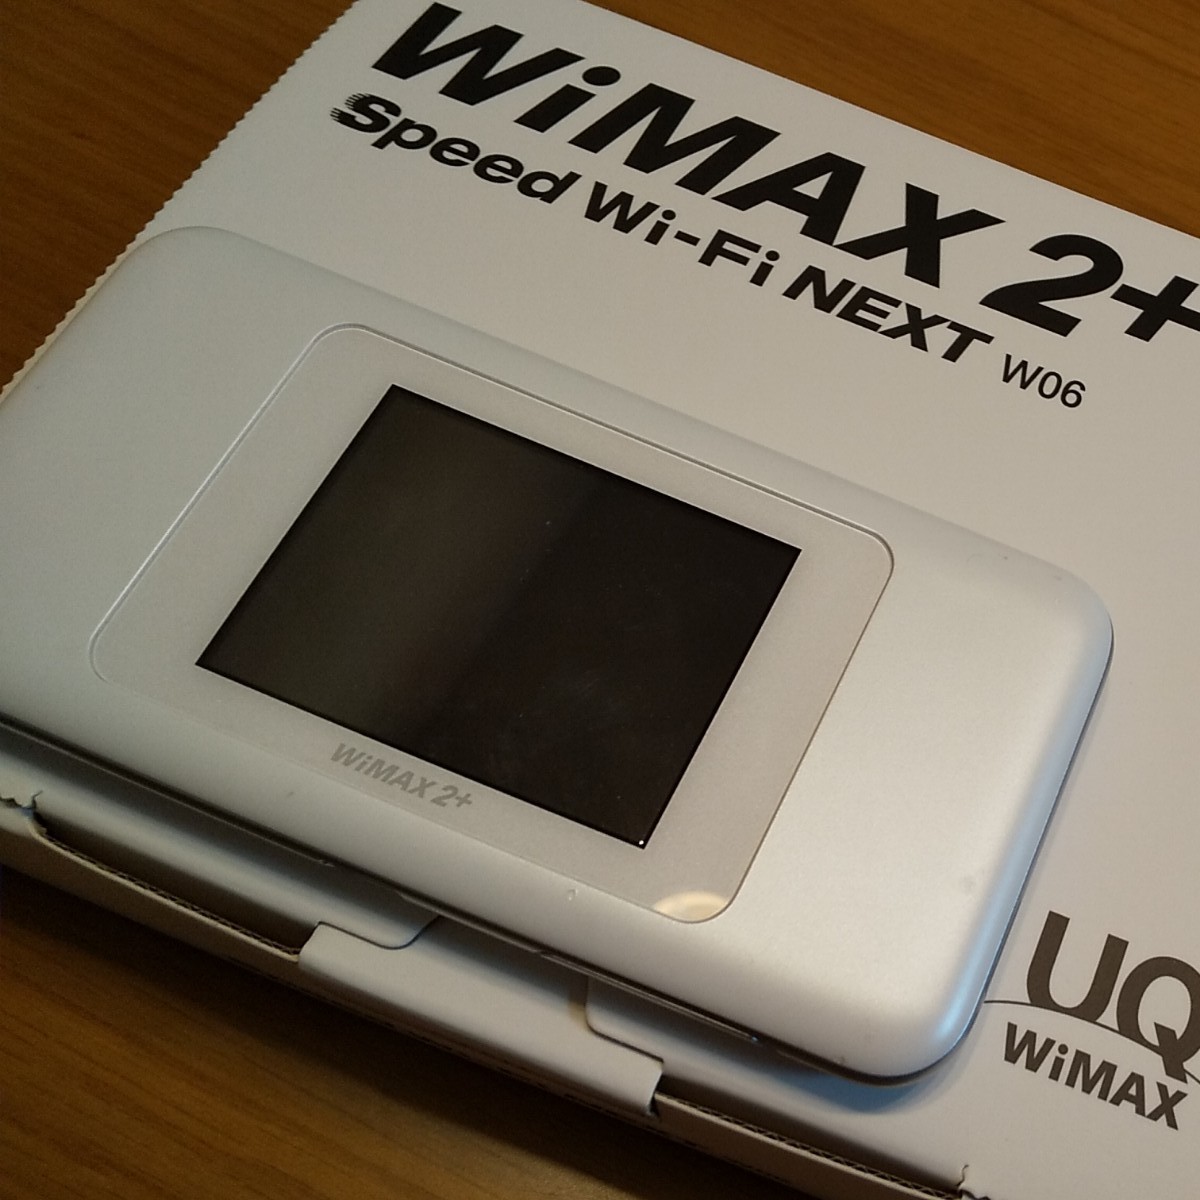 HUAWEI  WiMAX2+ W06  speed Wi-Fi NEXT